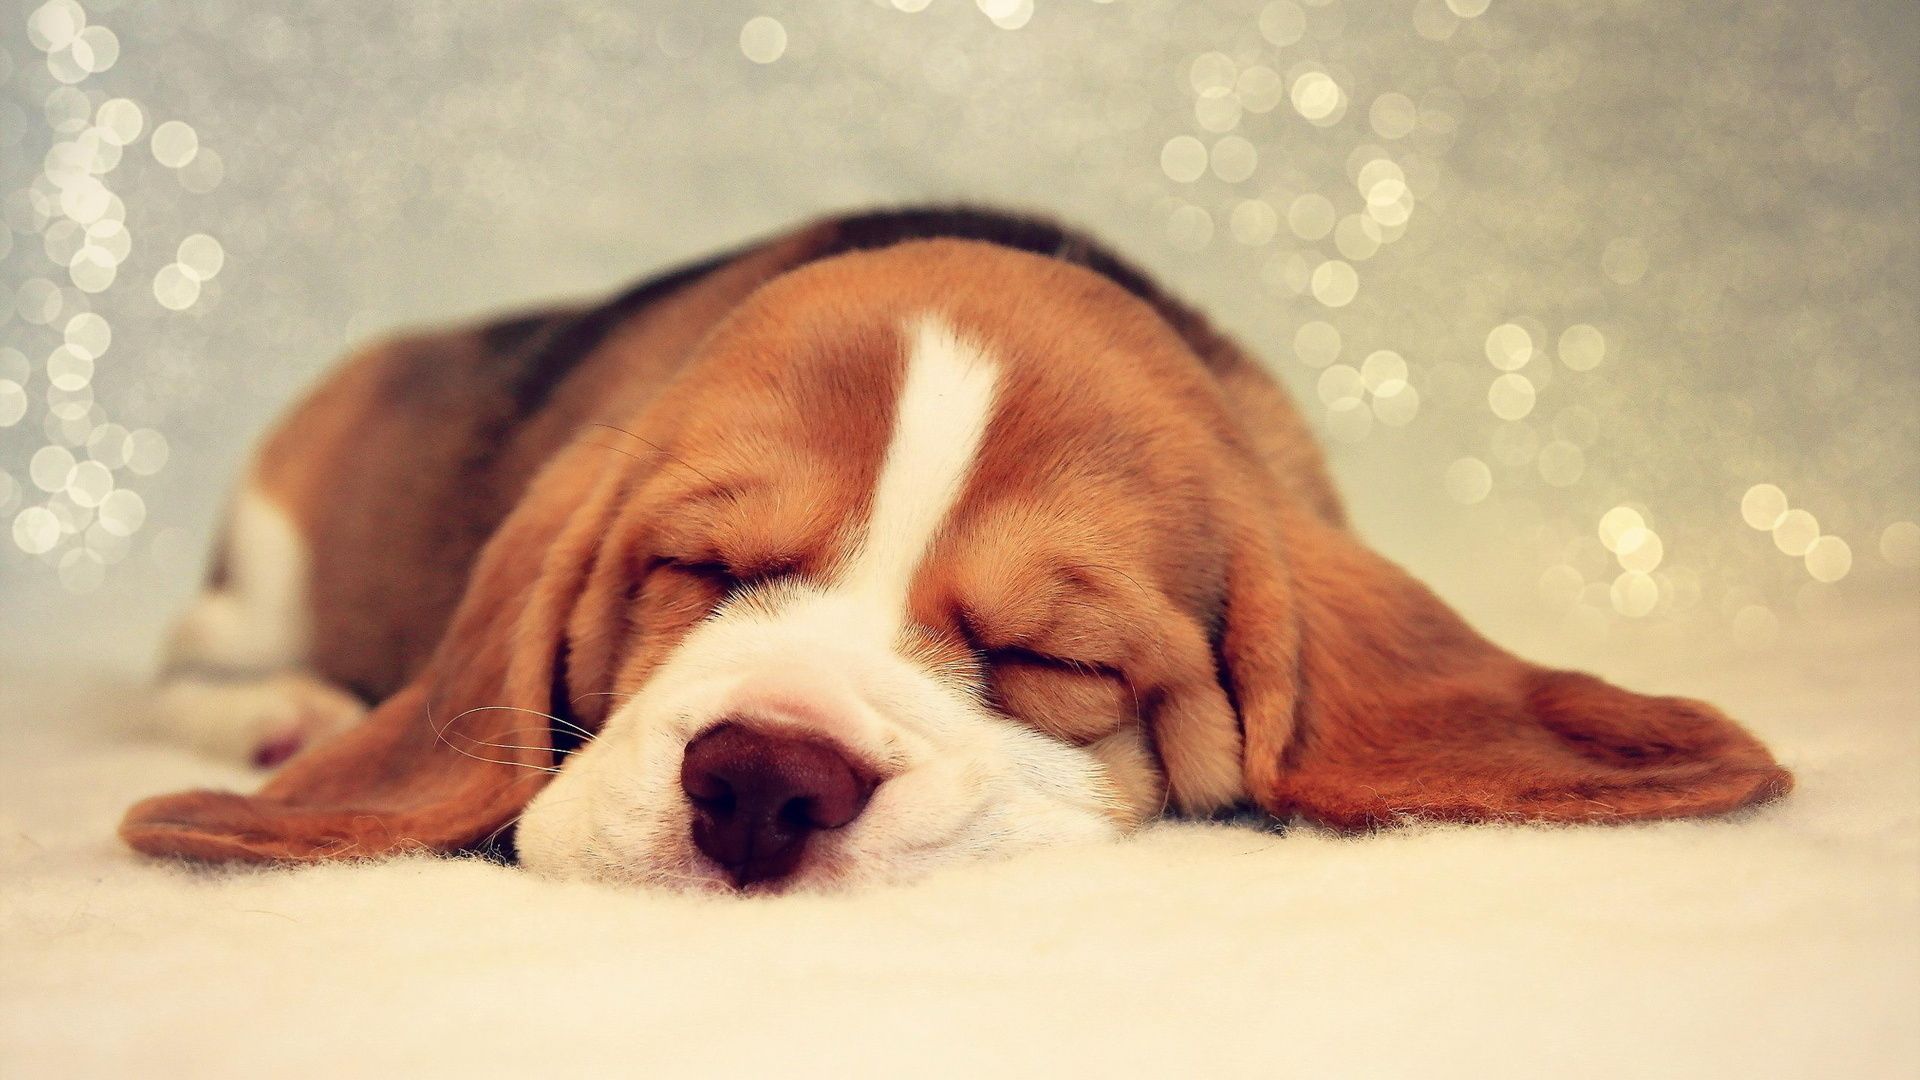 Wallpaper Puppy Basset Hound dog sleeping animal 1920x1080